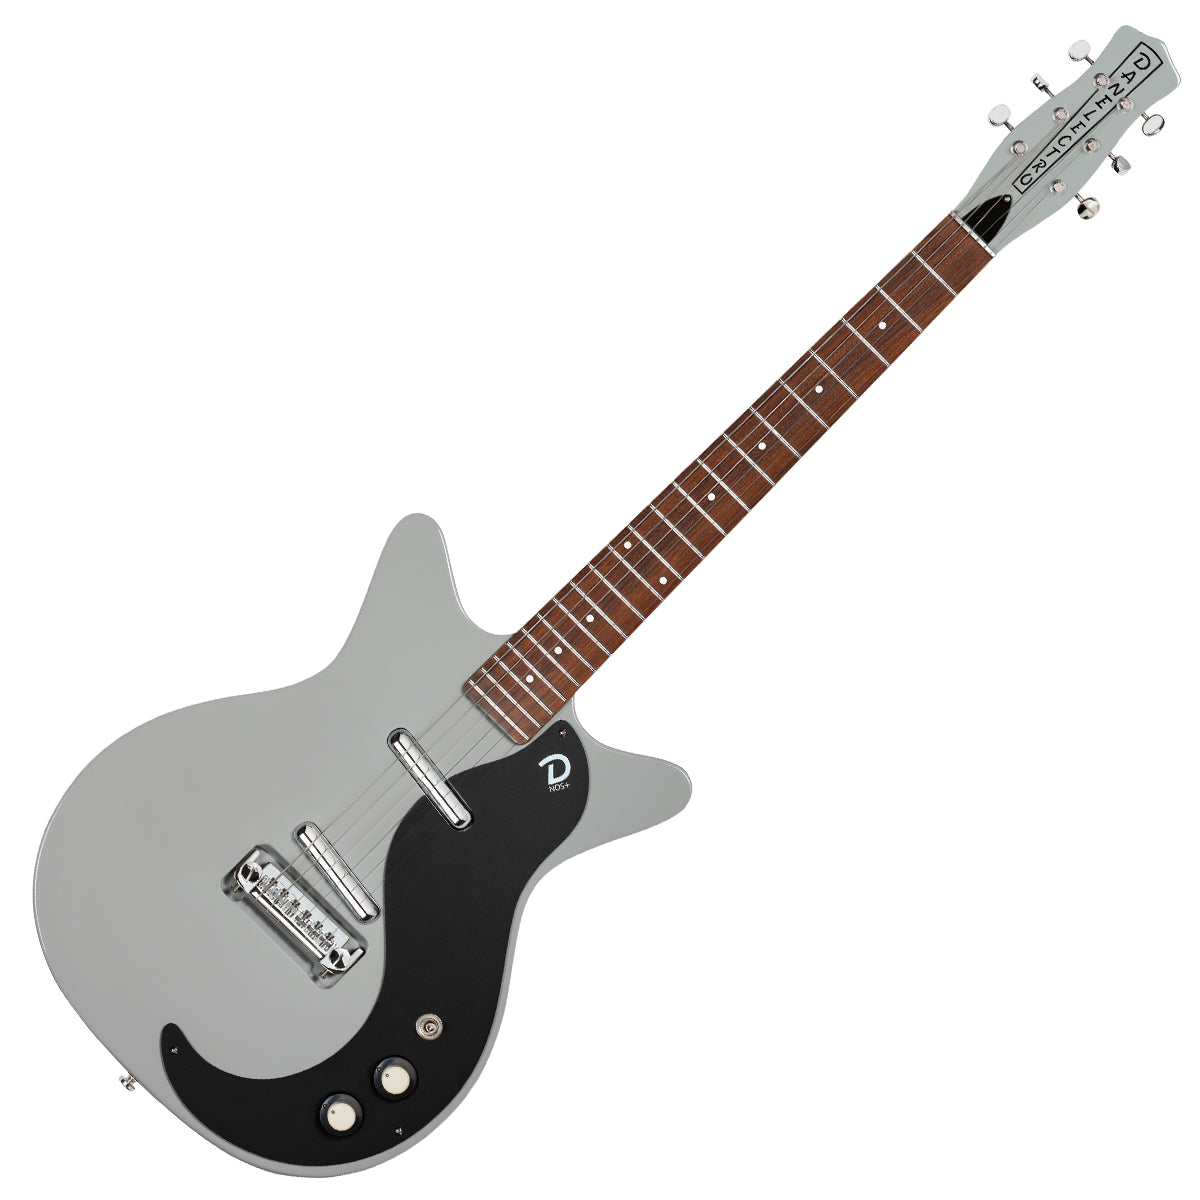 An image of Danelectro Dc59 Nos Guitar - Ice Gray